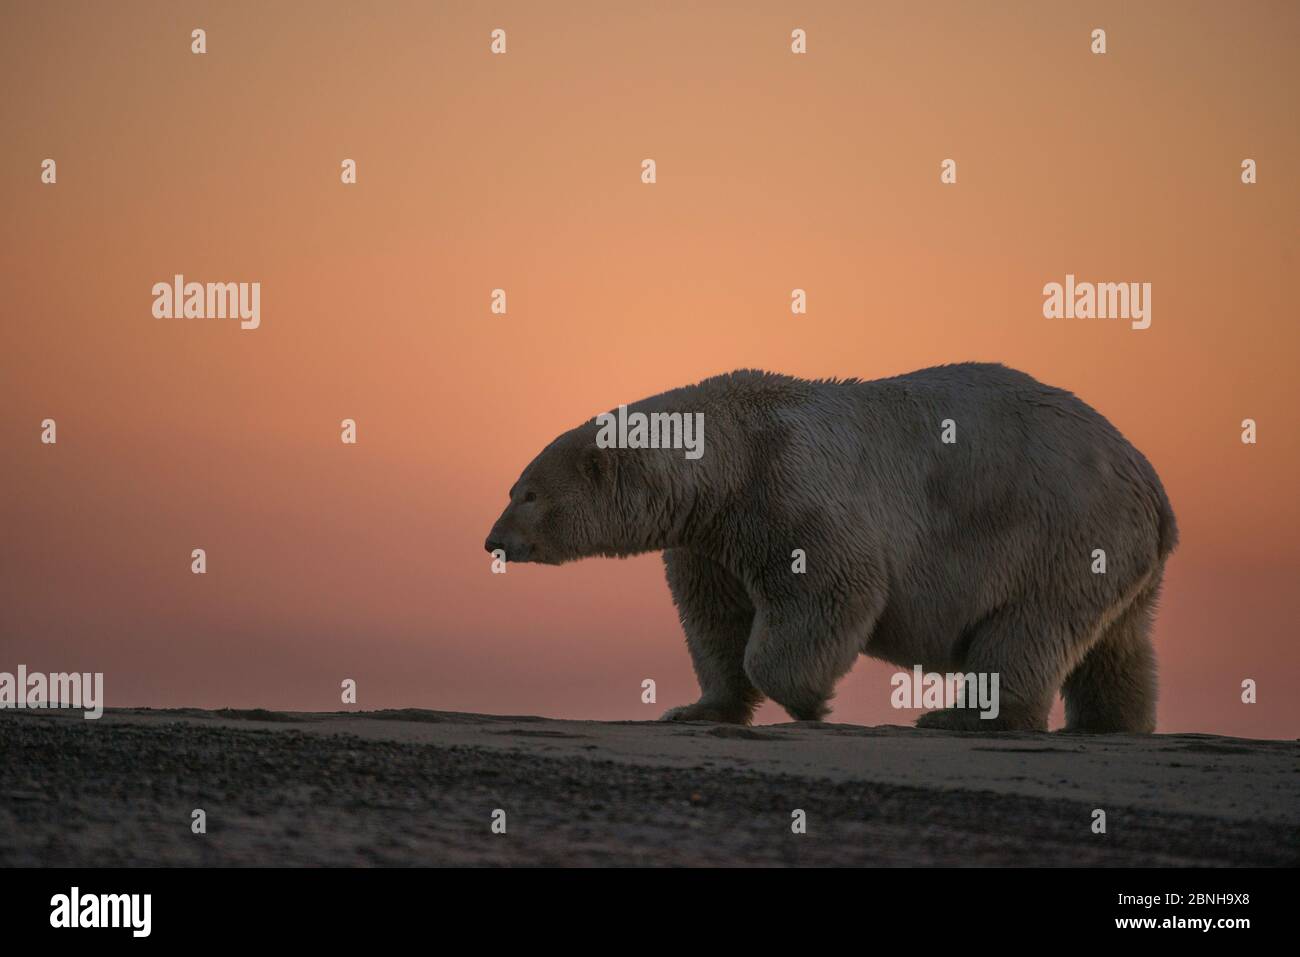 Orso polare (Ursus maritimus) a piedi al tramonto, Bernard Spit, fuori della zona 1002, Arctic National Wildlife Refuge, North Slope, Alaska, USA, settembre. Foto Stock